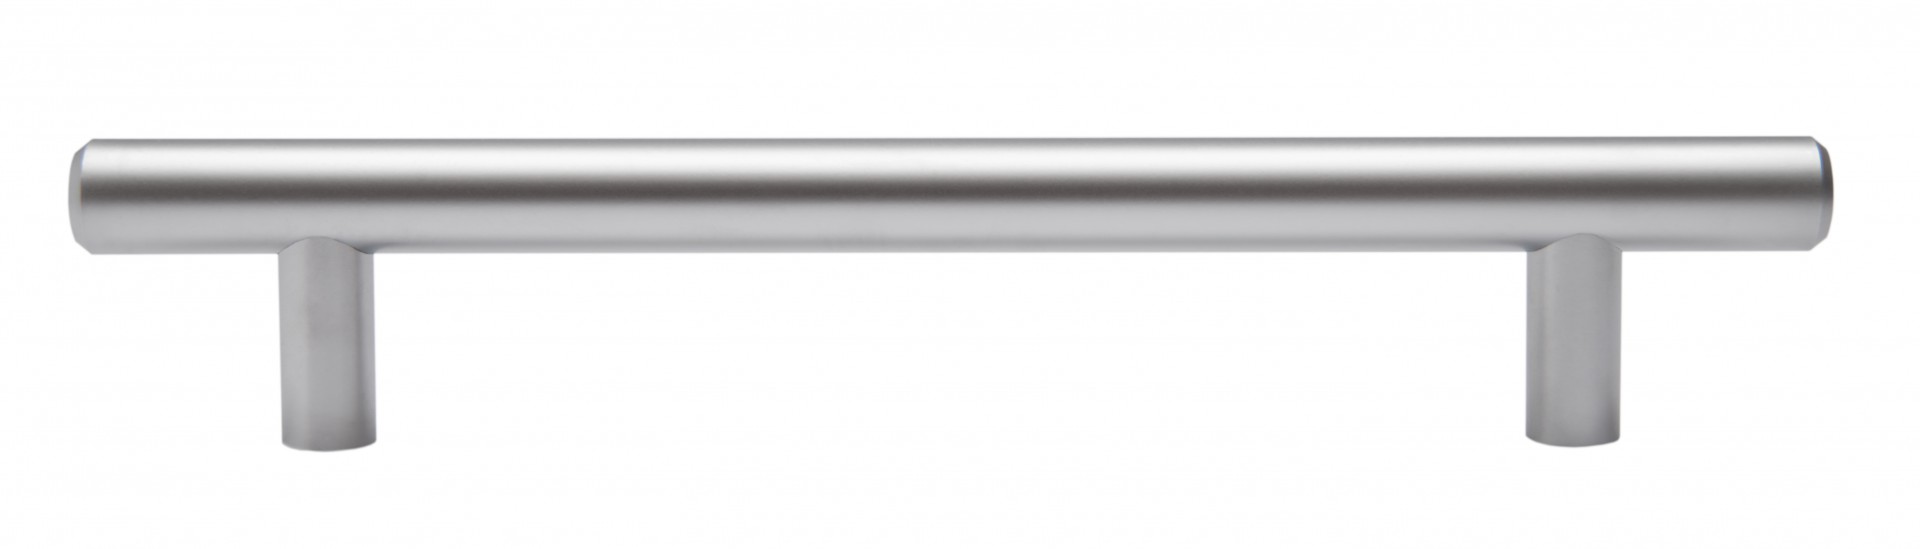 Ручка мебельная рейлинг 128мм сатин RR002SC.5/128 Boyard / 719739 / оптом и в розницу / мебельная фурнитура "ЛАВР"